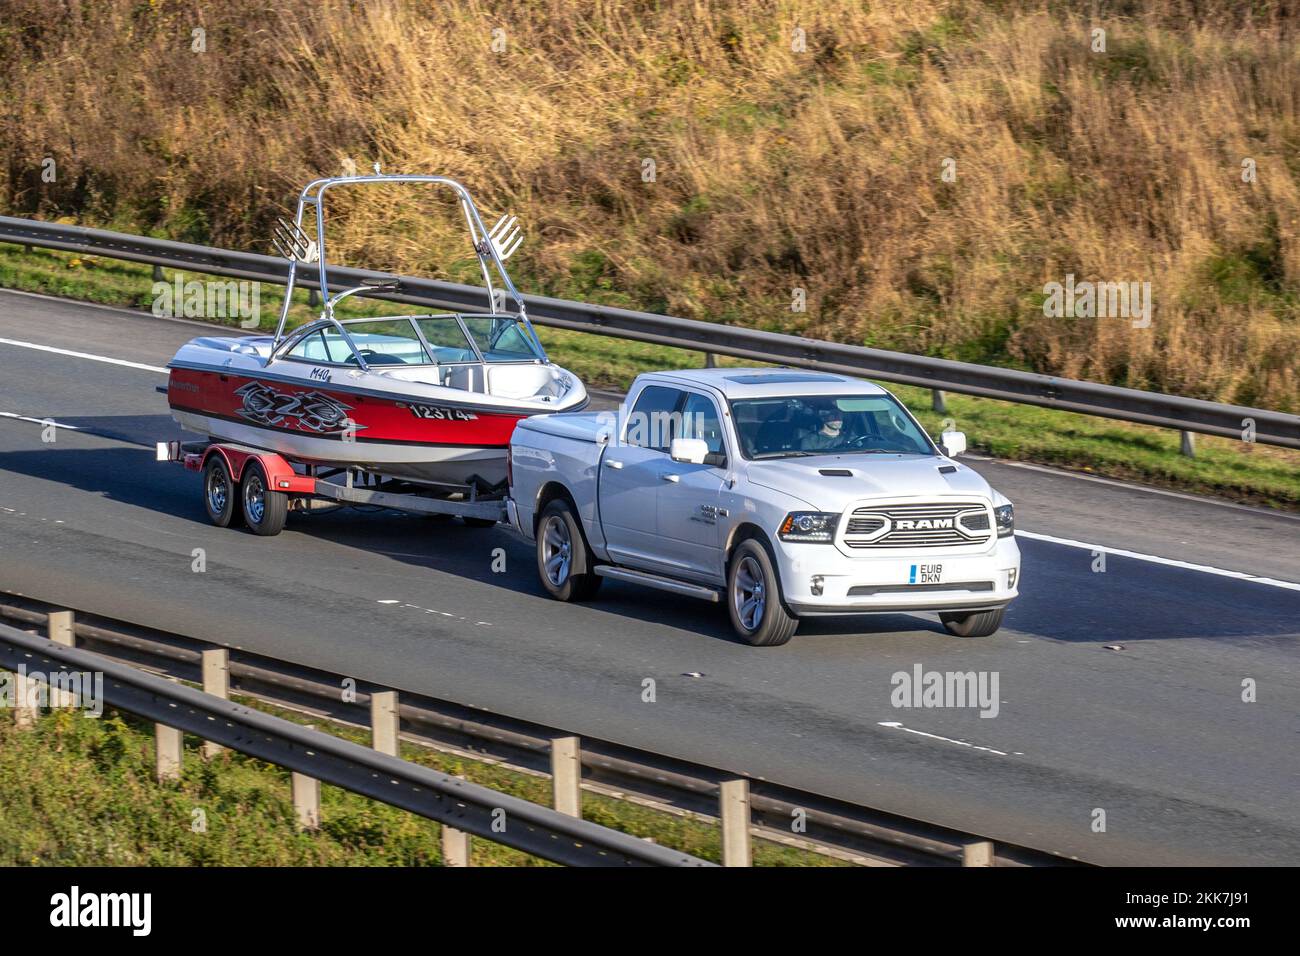 2018 American White Dodge RAM pick-up equipaggio cabina, con motore Hemi V8 da 5,7 litri. Traino Master Craft M40 X-barca a motore serie; viaggiando sull'autostrada M6, Regno Unito Foto Stock